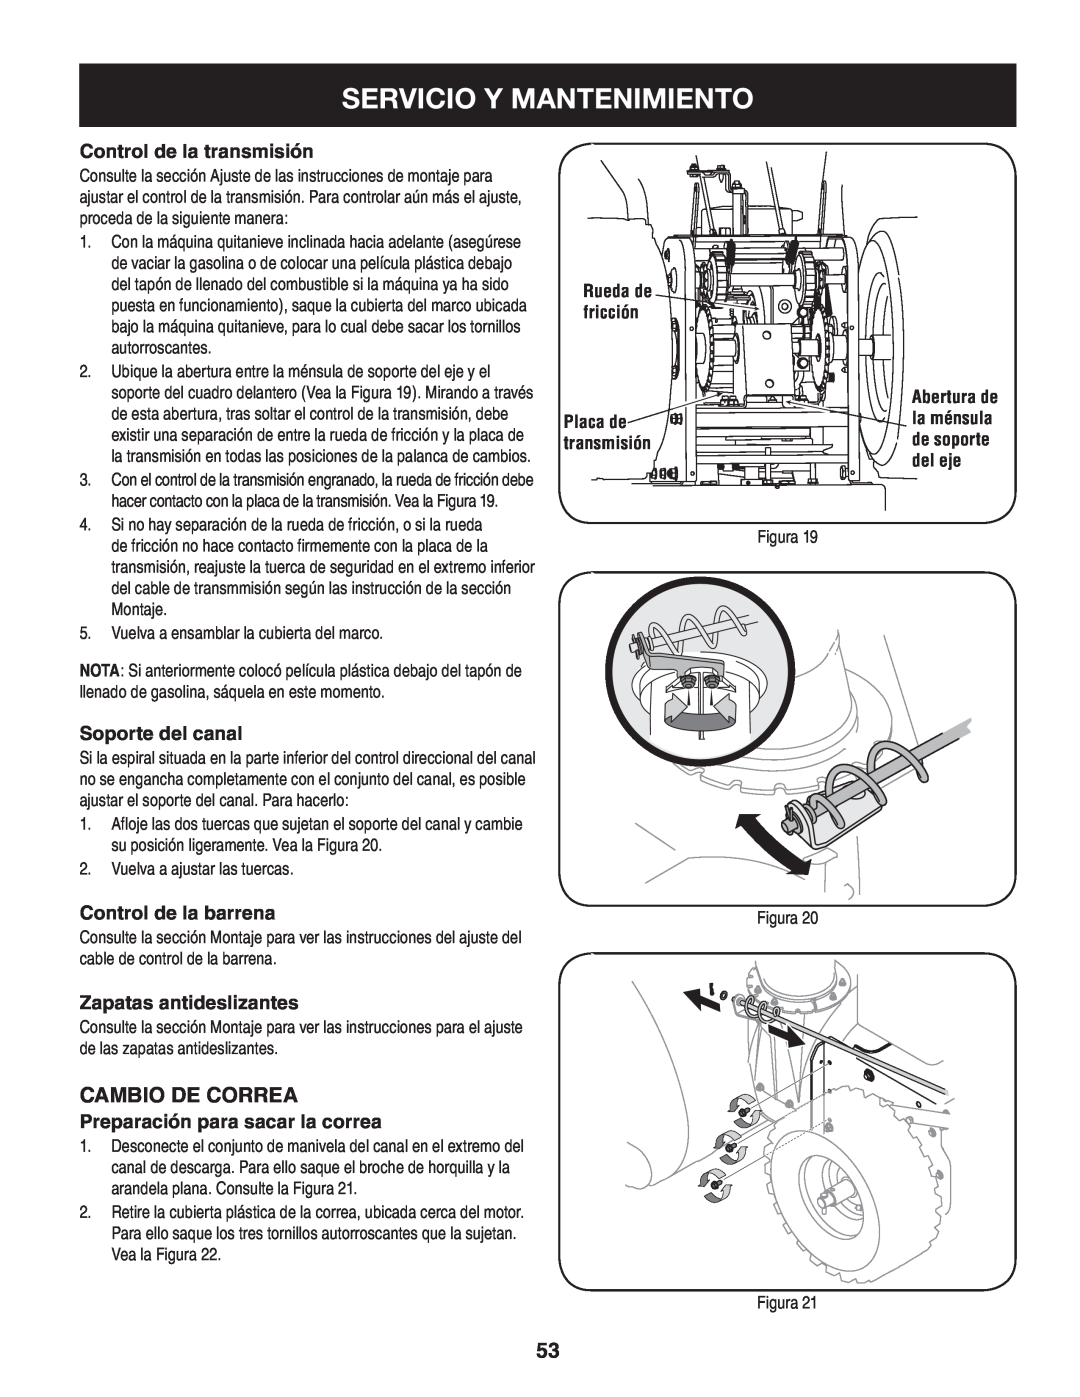 Craftsman 247.88045 manual Servicio Y Mantenimiento, Cambio de correa, Control de la transmisión, Soporte del canal 